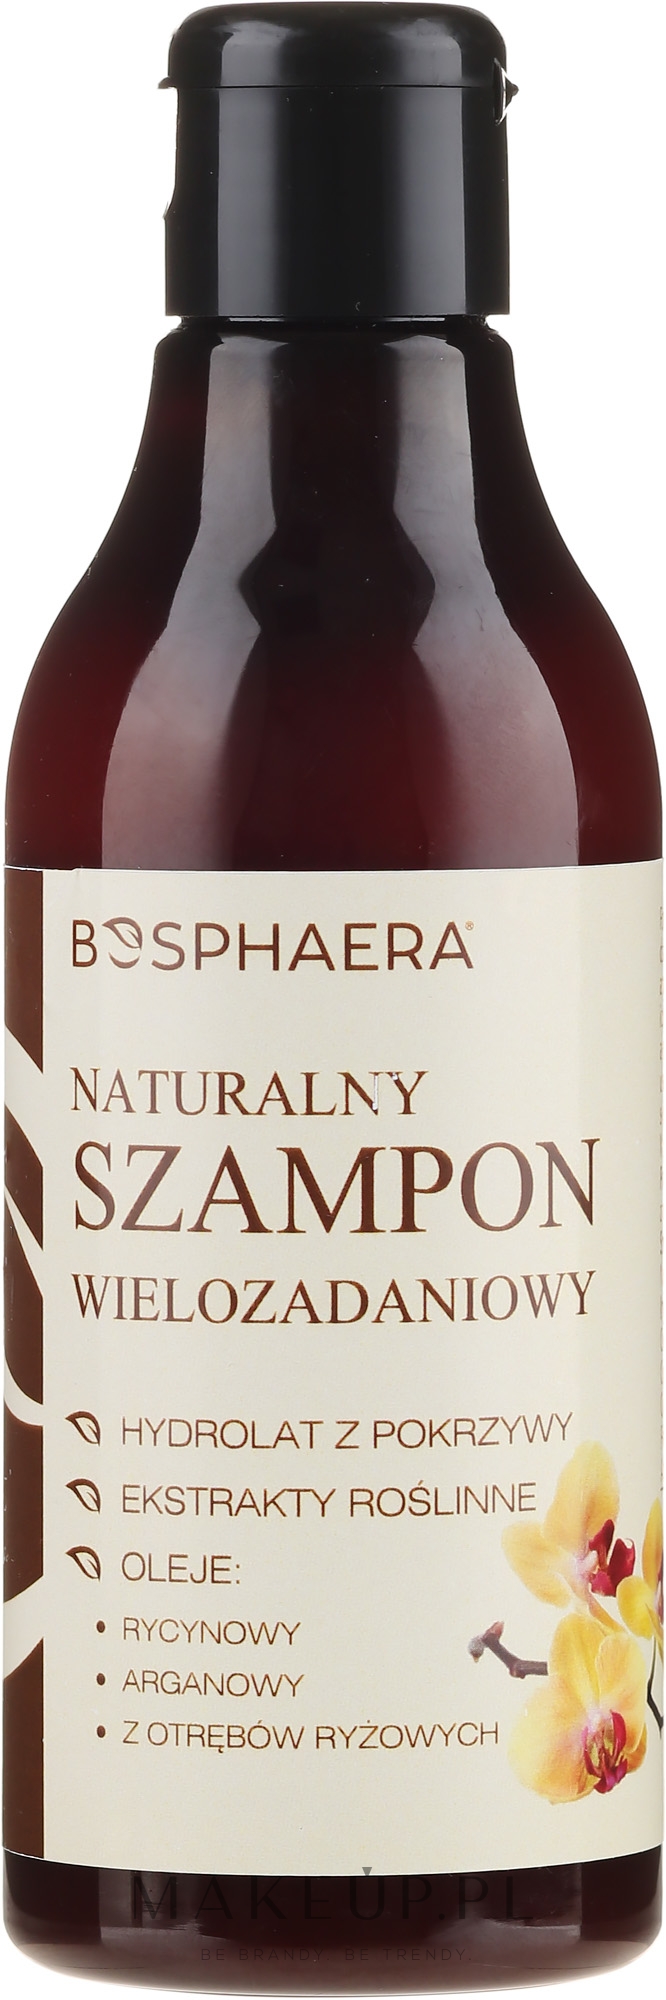 Naturalny szampon wielozadaniowy do włosów - Bosphaera — Zdjęcie 200 g